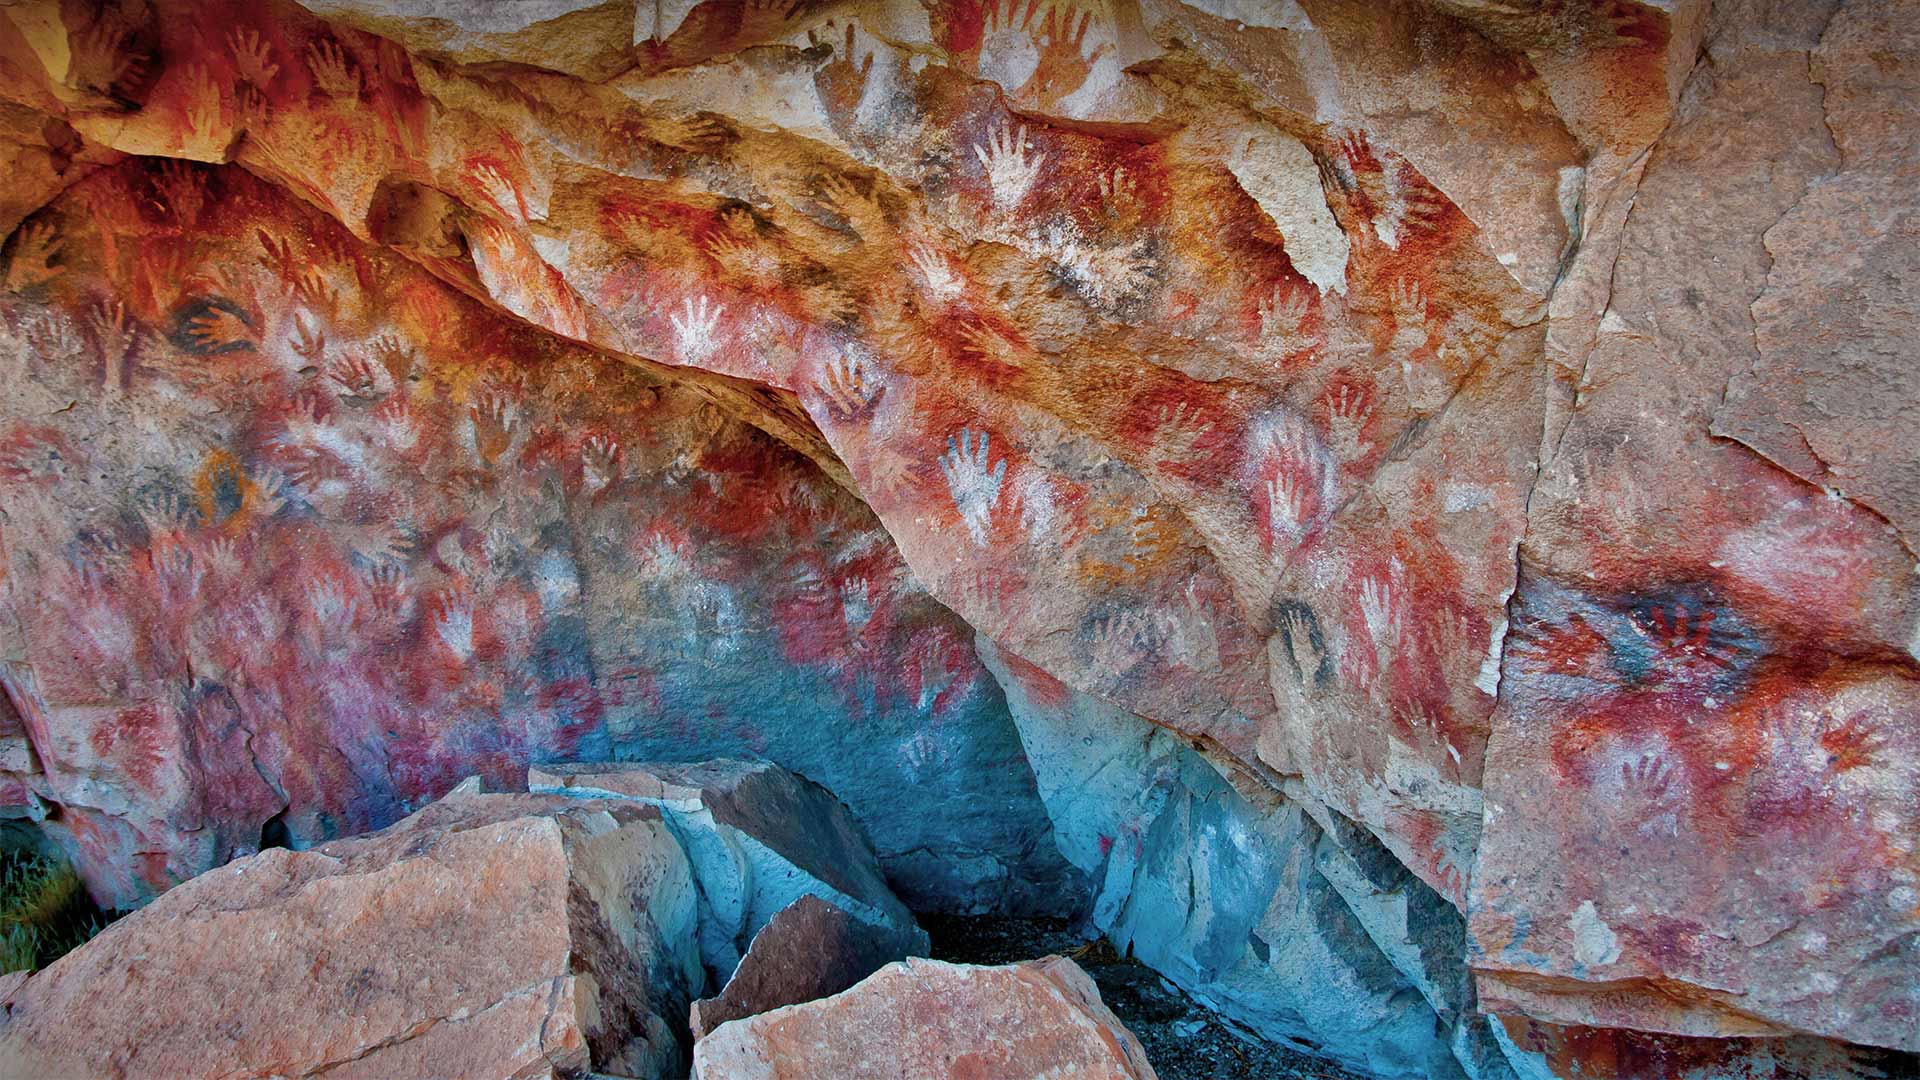 Cueva de las Manos (Cave of the Hands) in Santa Cruz, Argentina - Adwo/Alamy)